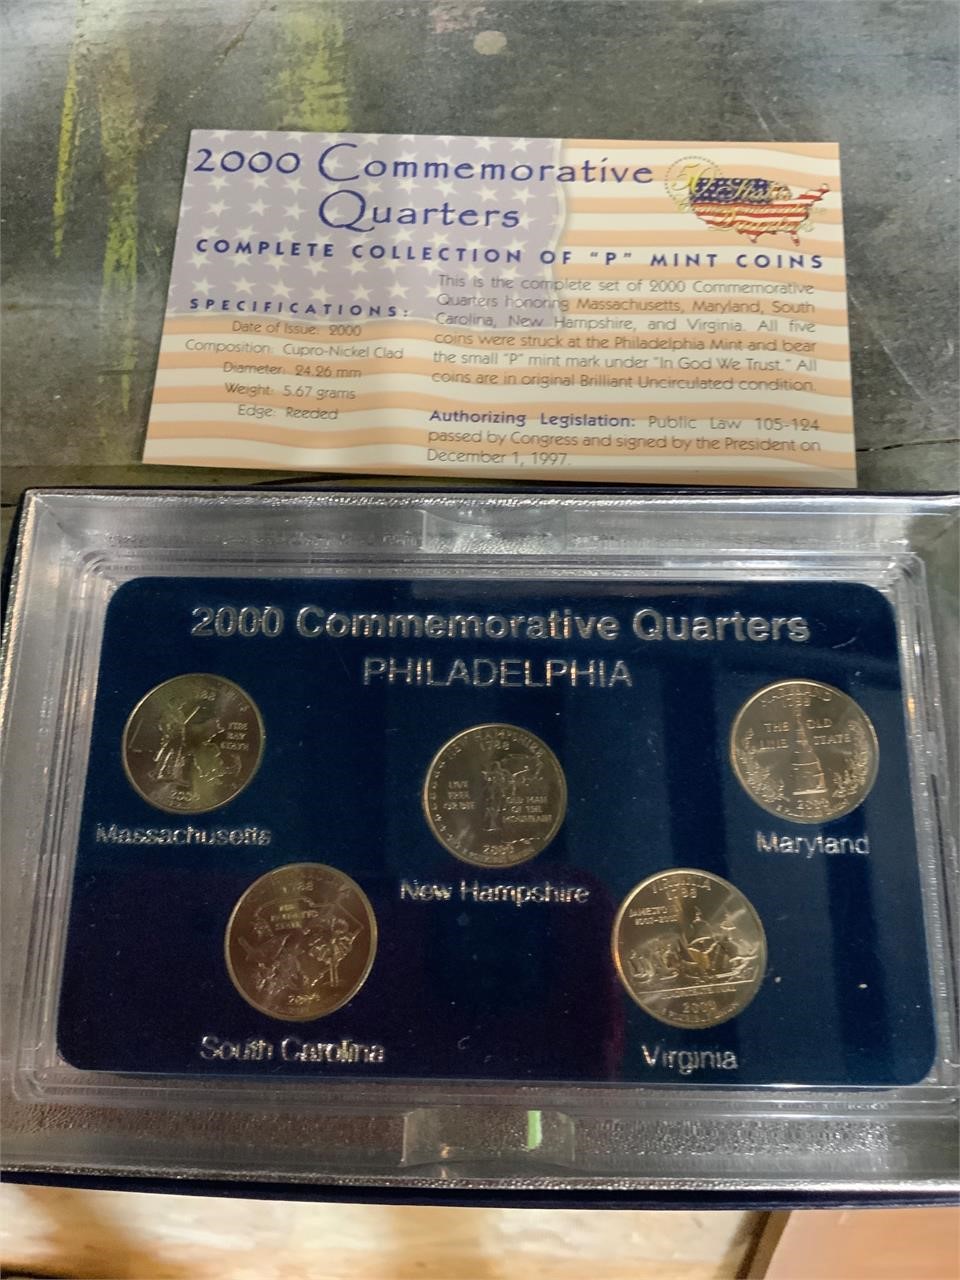 2000 commemorative quarters P mint